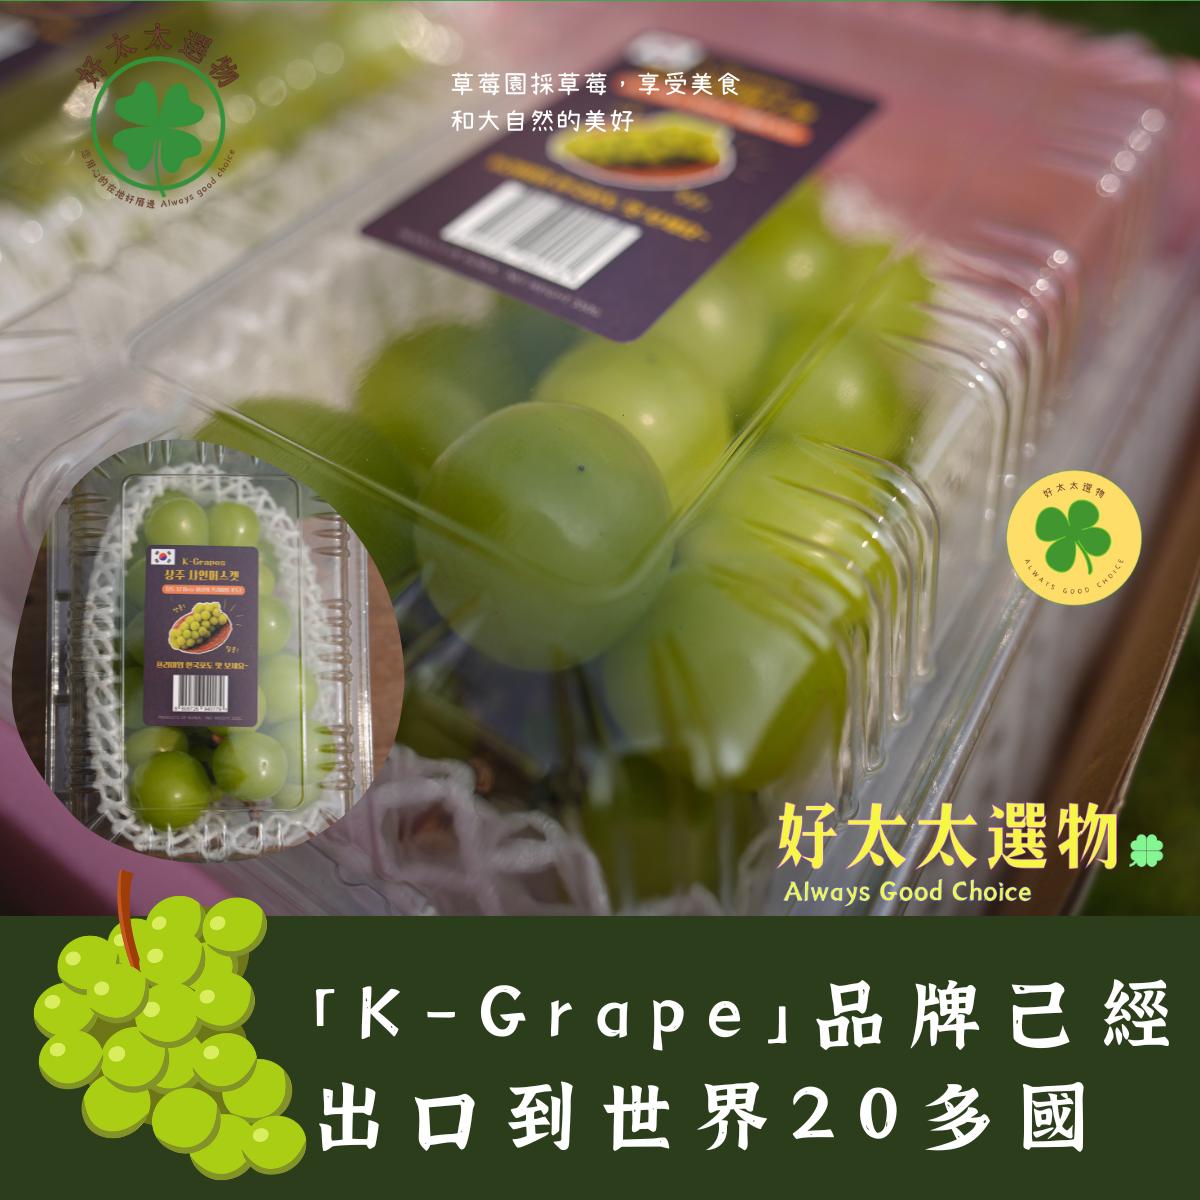 貼有「K-Grape」品牌己經出口到世界20多國，各國的消費者對韓國【陽光玫瑰葡萄】非常喜愛，是送禮有誠意的代表。